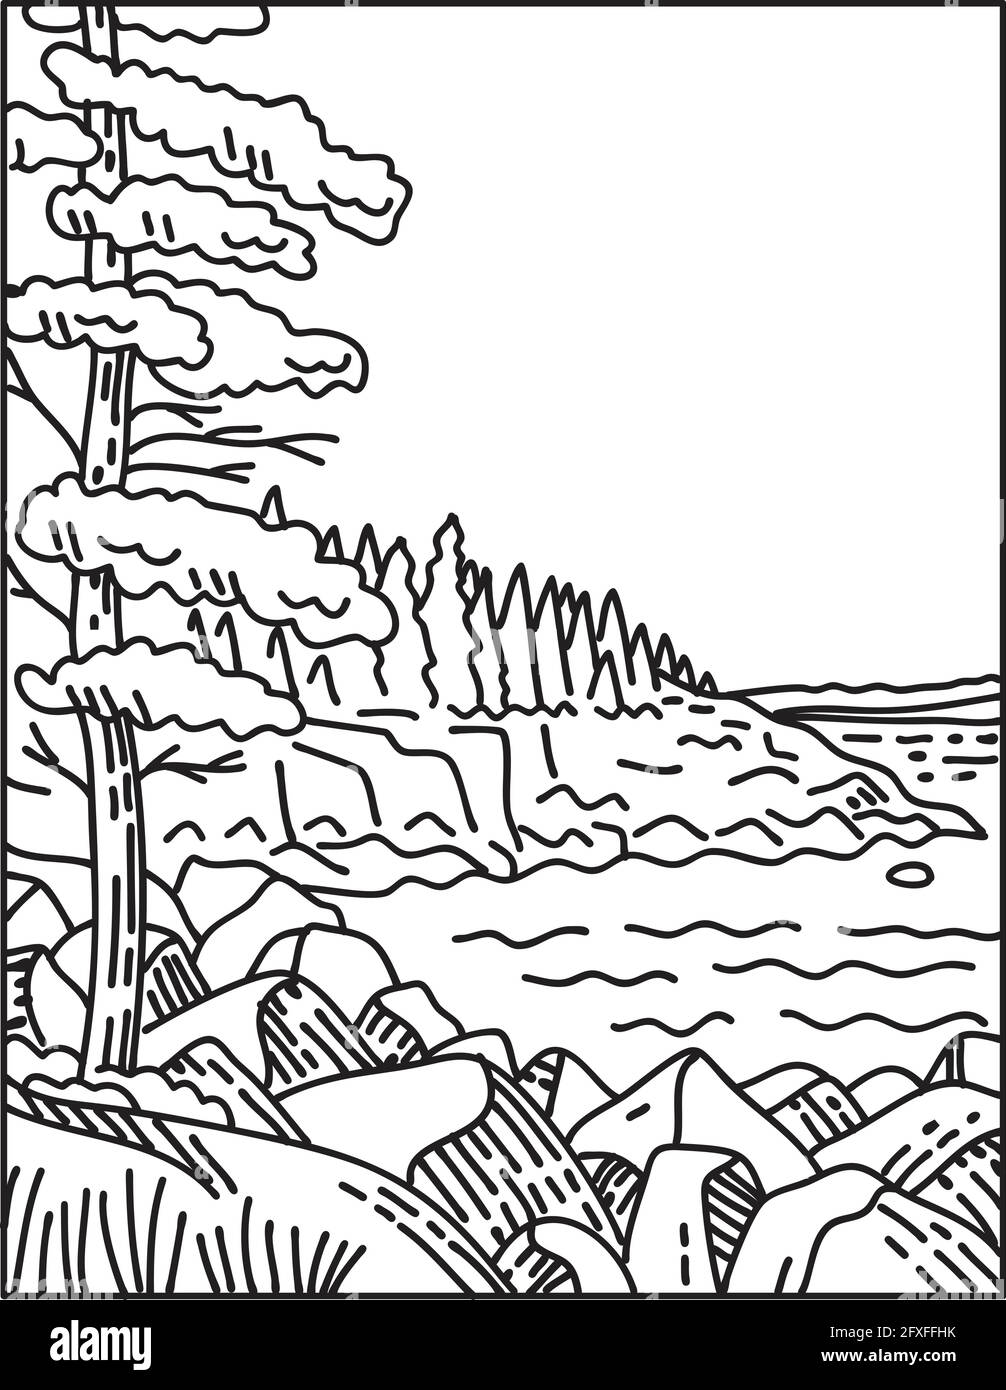 Monolinie Illustration des Acadia National Park entlang des Atlantiks Küste auf Mount Desert Island in Maine USA Von Amerika im Retro-Stil Stock Vektor